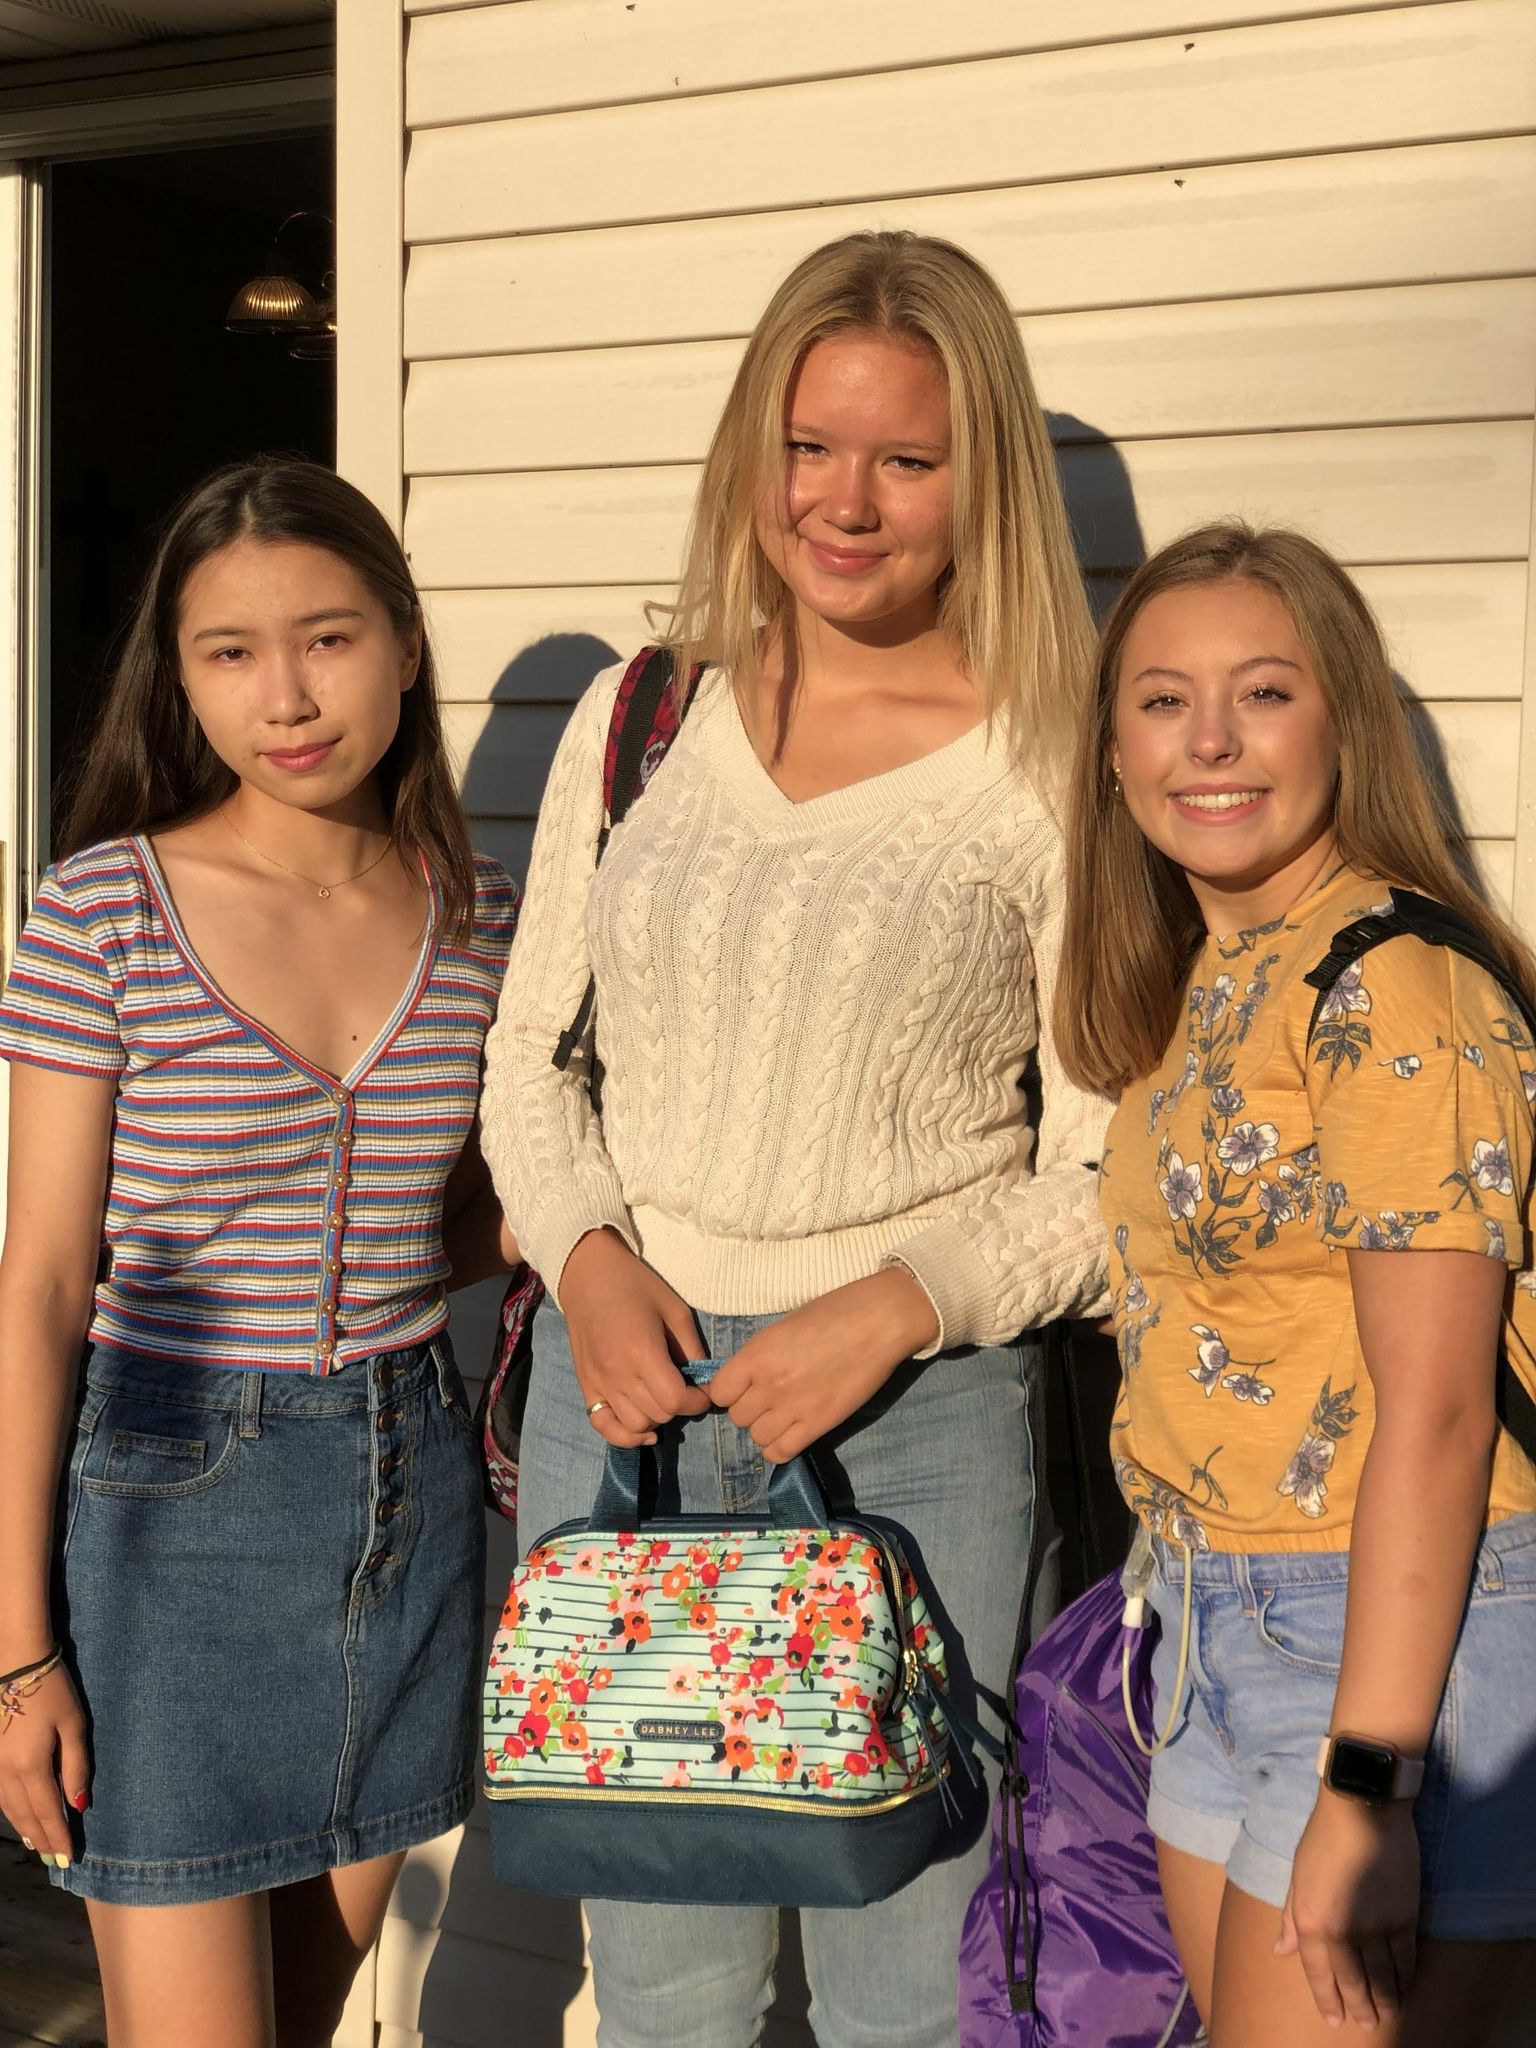 Pilt esimesest koolipäevast, kui Maria Dyavolessa Kuittinen (keskel) läks oma võõrustaja-ema õe lapse ja Kasahstani vahetusõpilasega kooli.